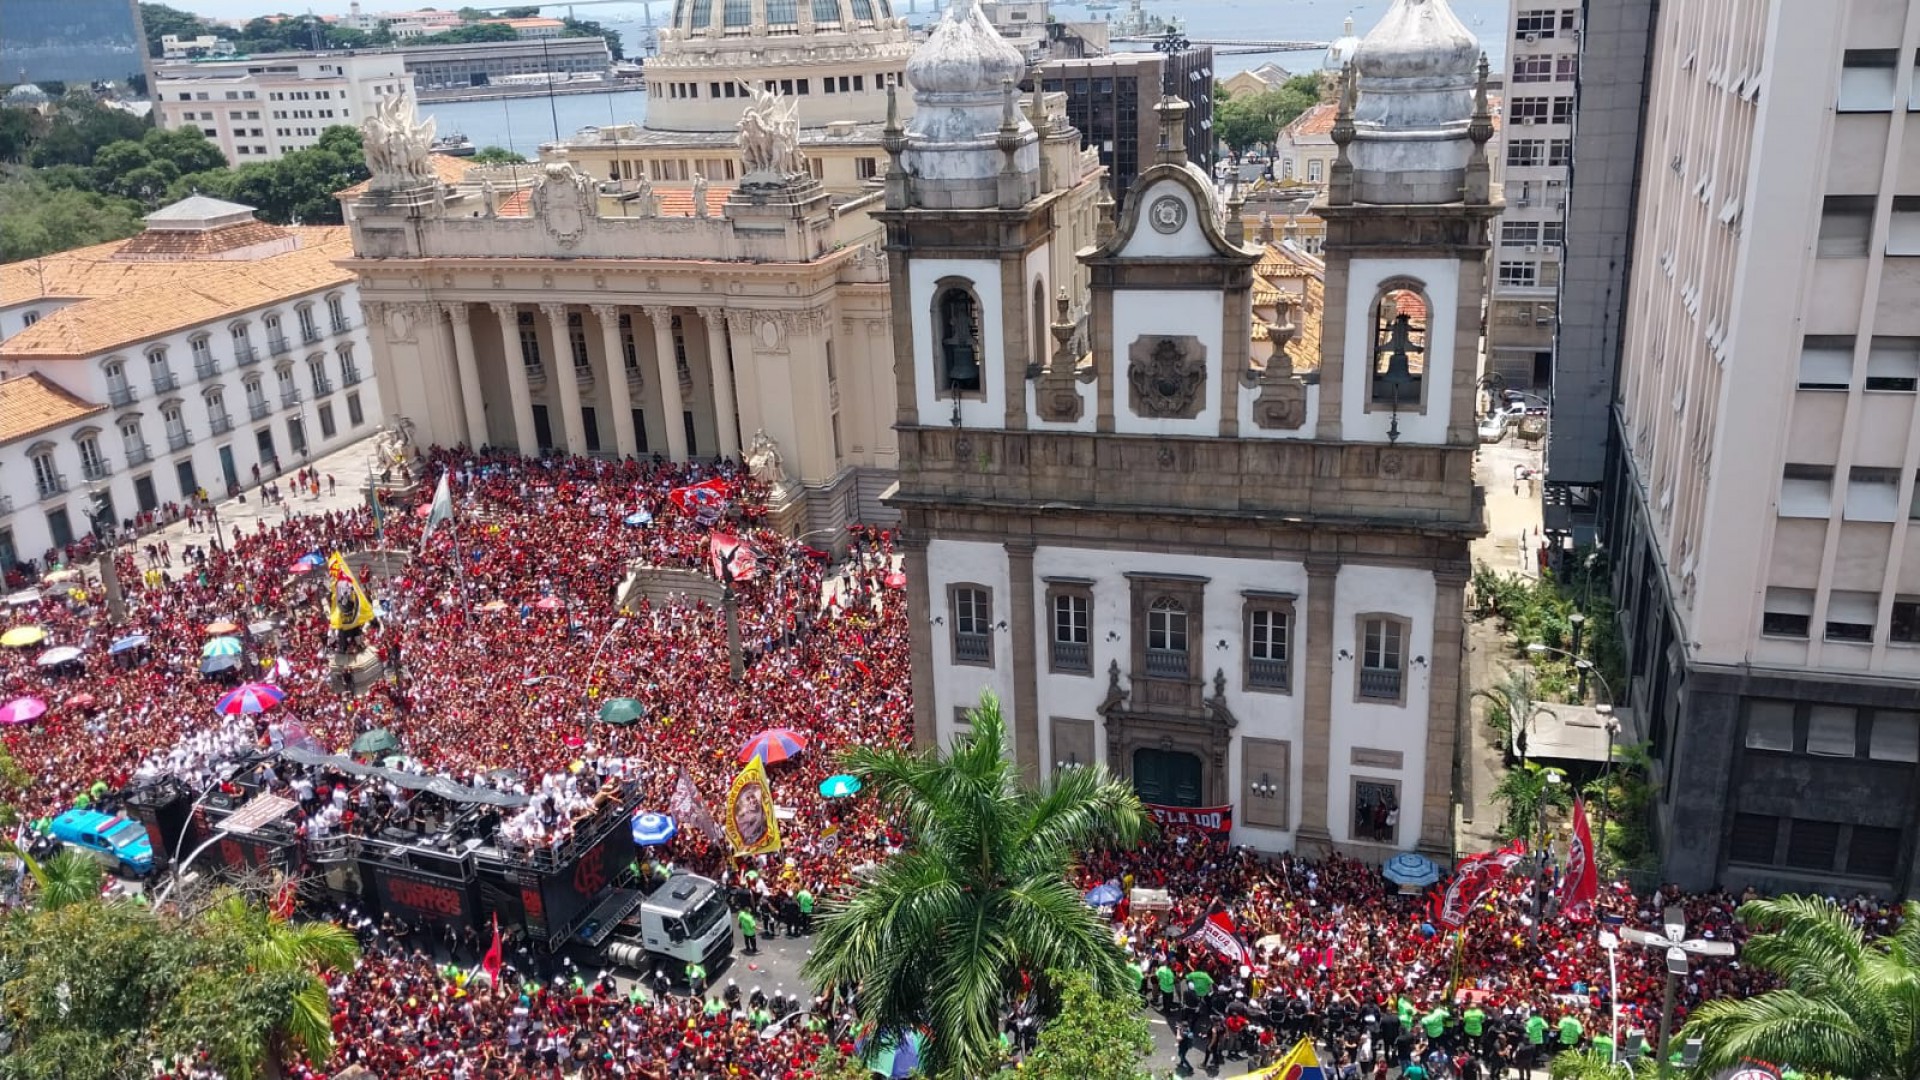 Torcida comemora conquista da Seleção no Centro do Recife com